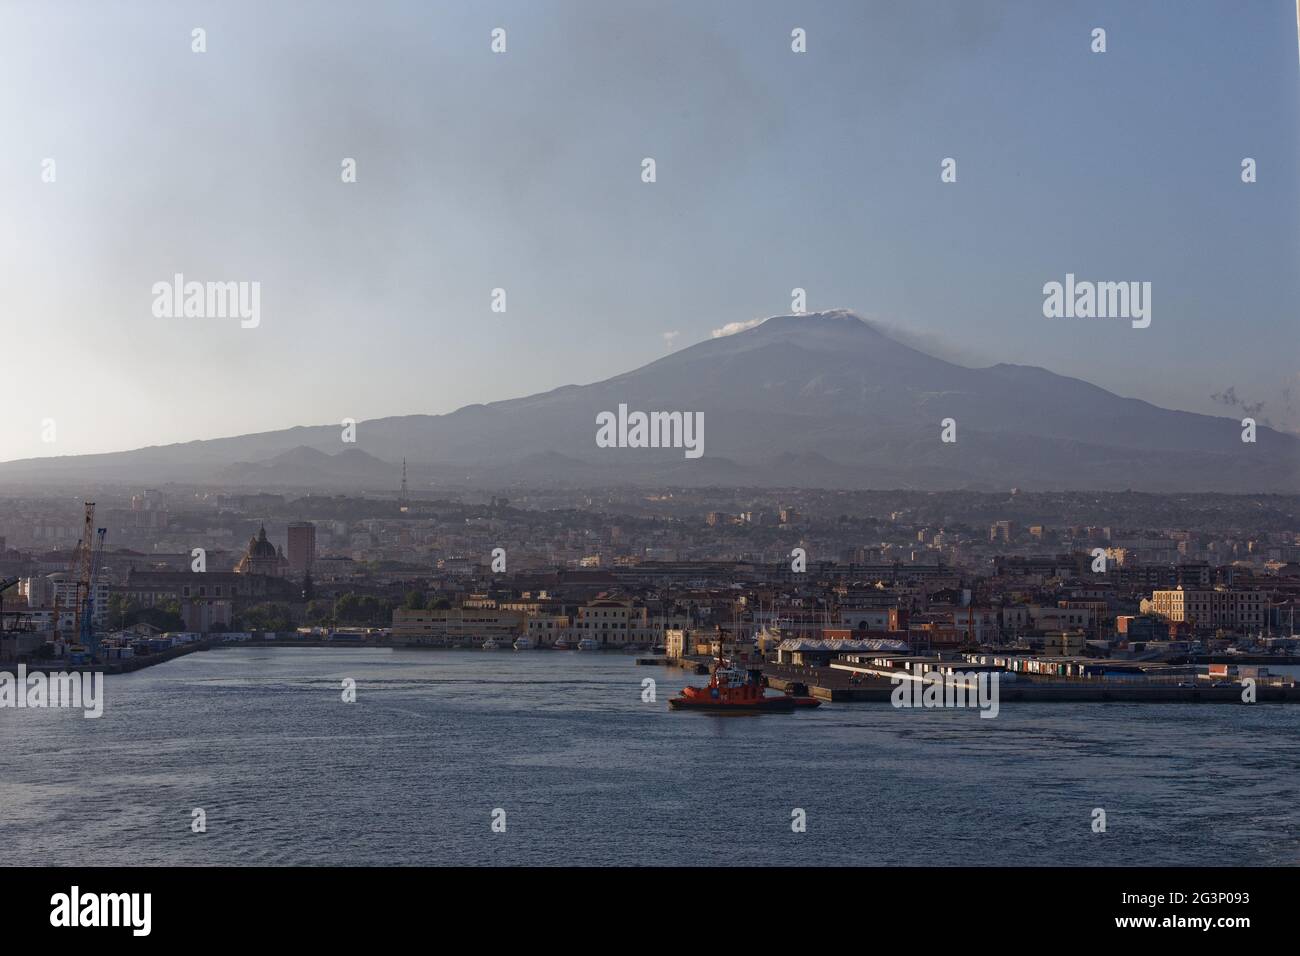 Mount Etna - Volcano Etna - Catania Italy/Sicilia Stock Photo